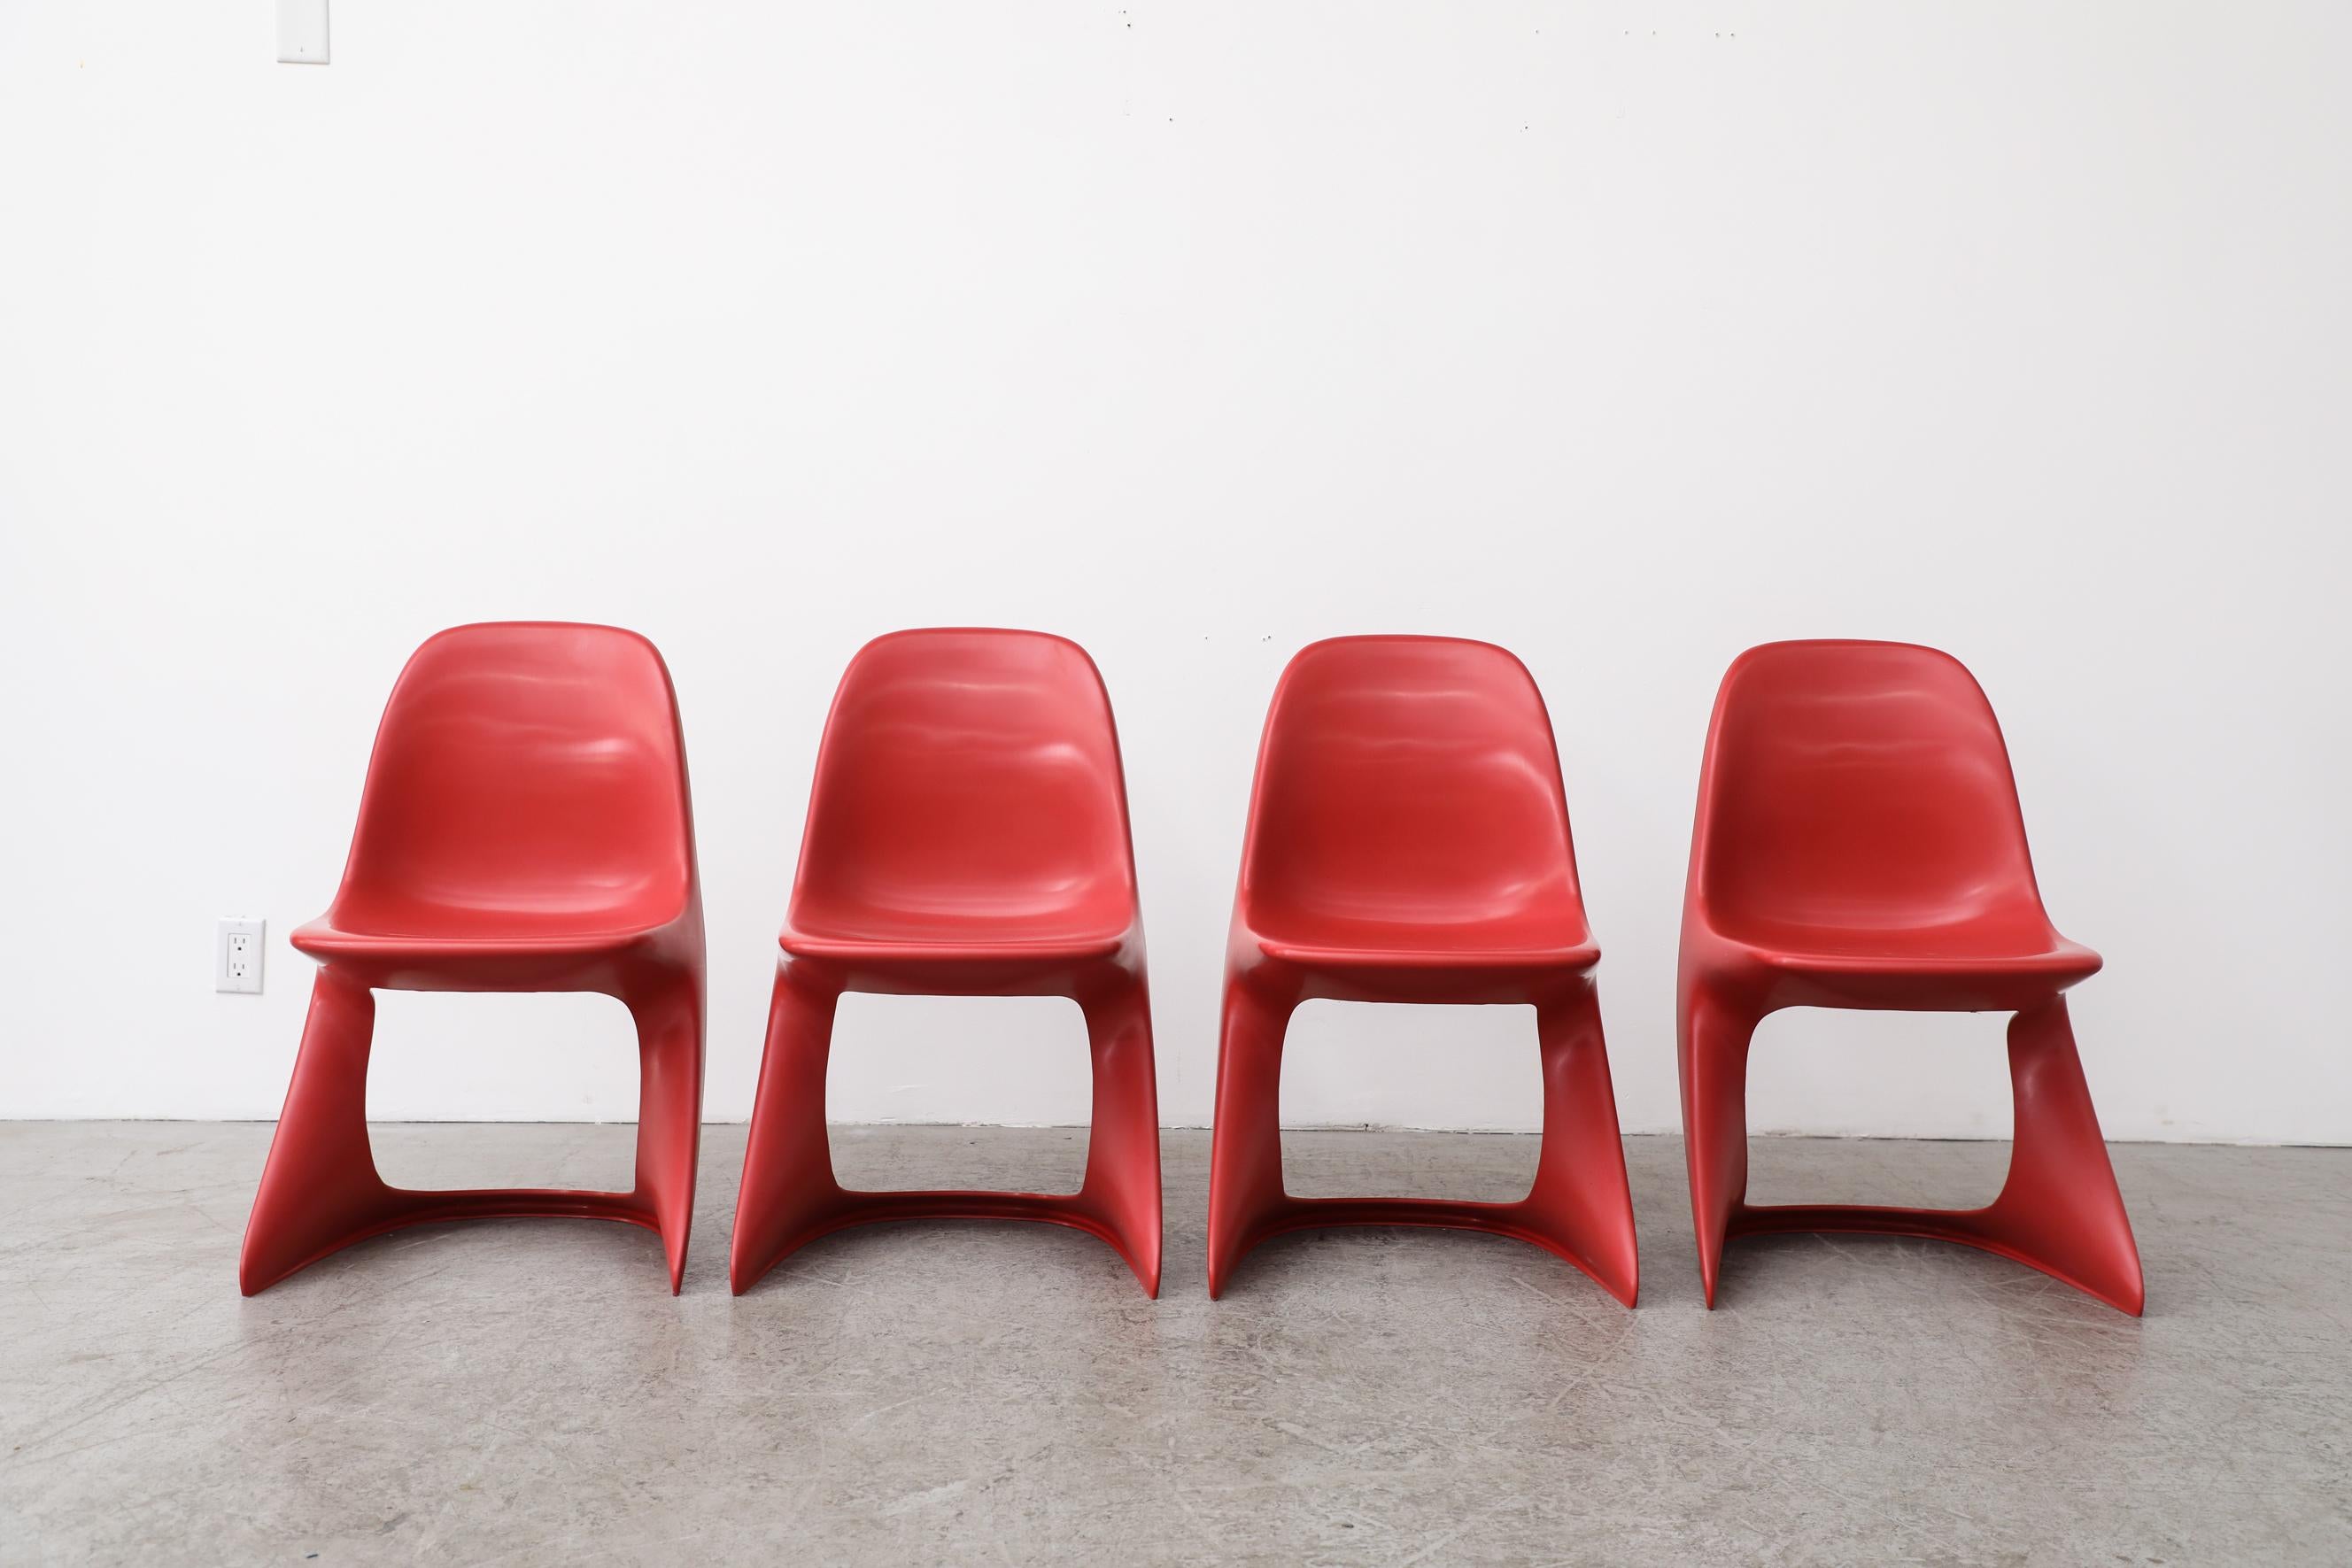 Ensemble de quatre chaises Casalino empilables en plastique rouge de l'ère spatiale des années 1970, par Alexander AGE. Ces jolies petites chaises pour enfants s'empilent facilement. En état d'origine avec une usure visible, y compris des rayures.